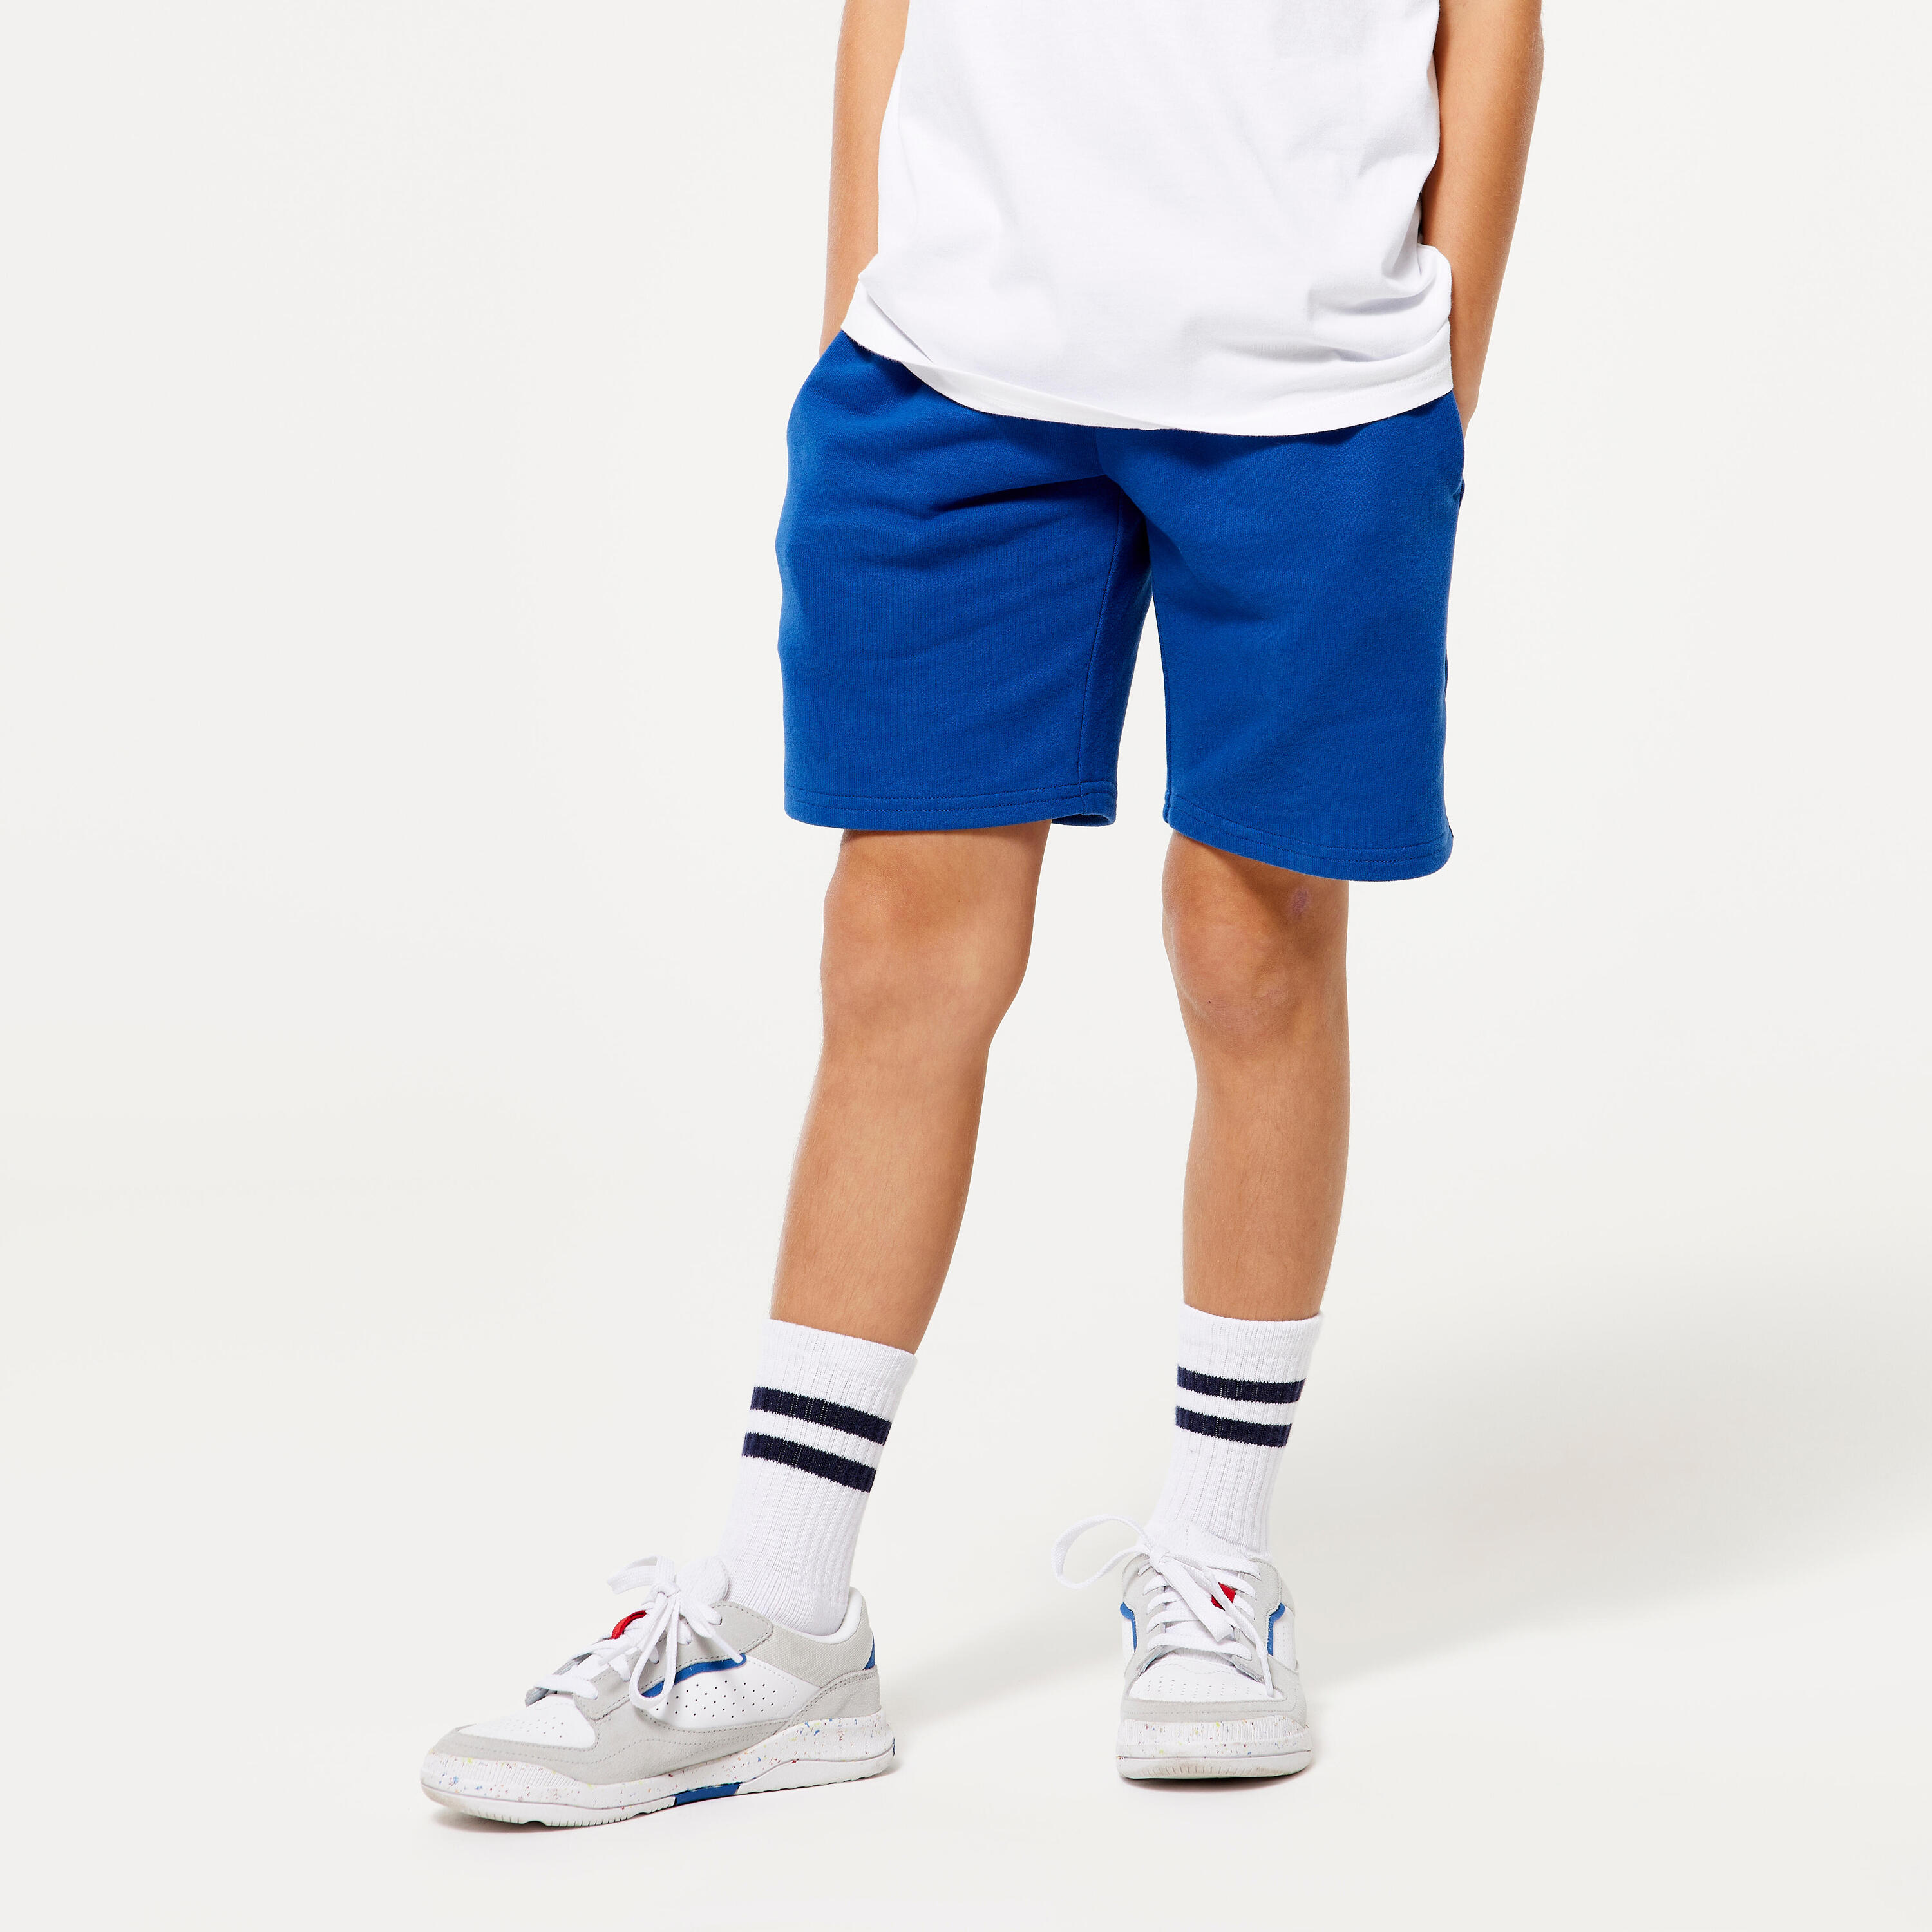 Kids' Unisex Cotton Shorts - Blue 1/4